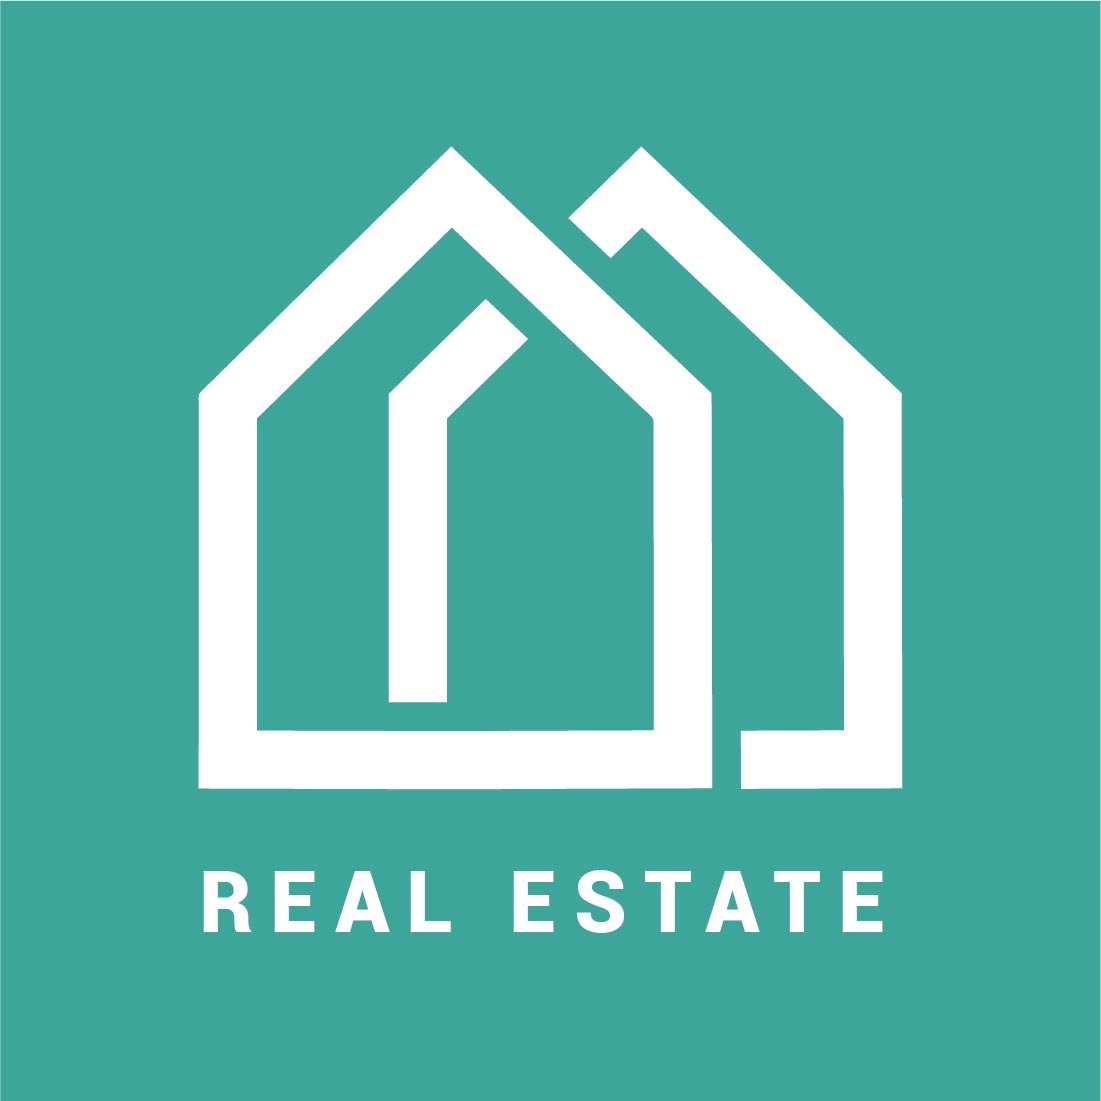 Real estate company logo, Modern home vector logo art, Construction logo design template Pro Vector preview image.